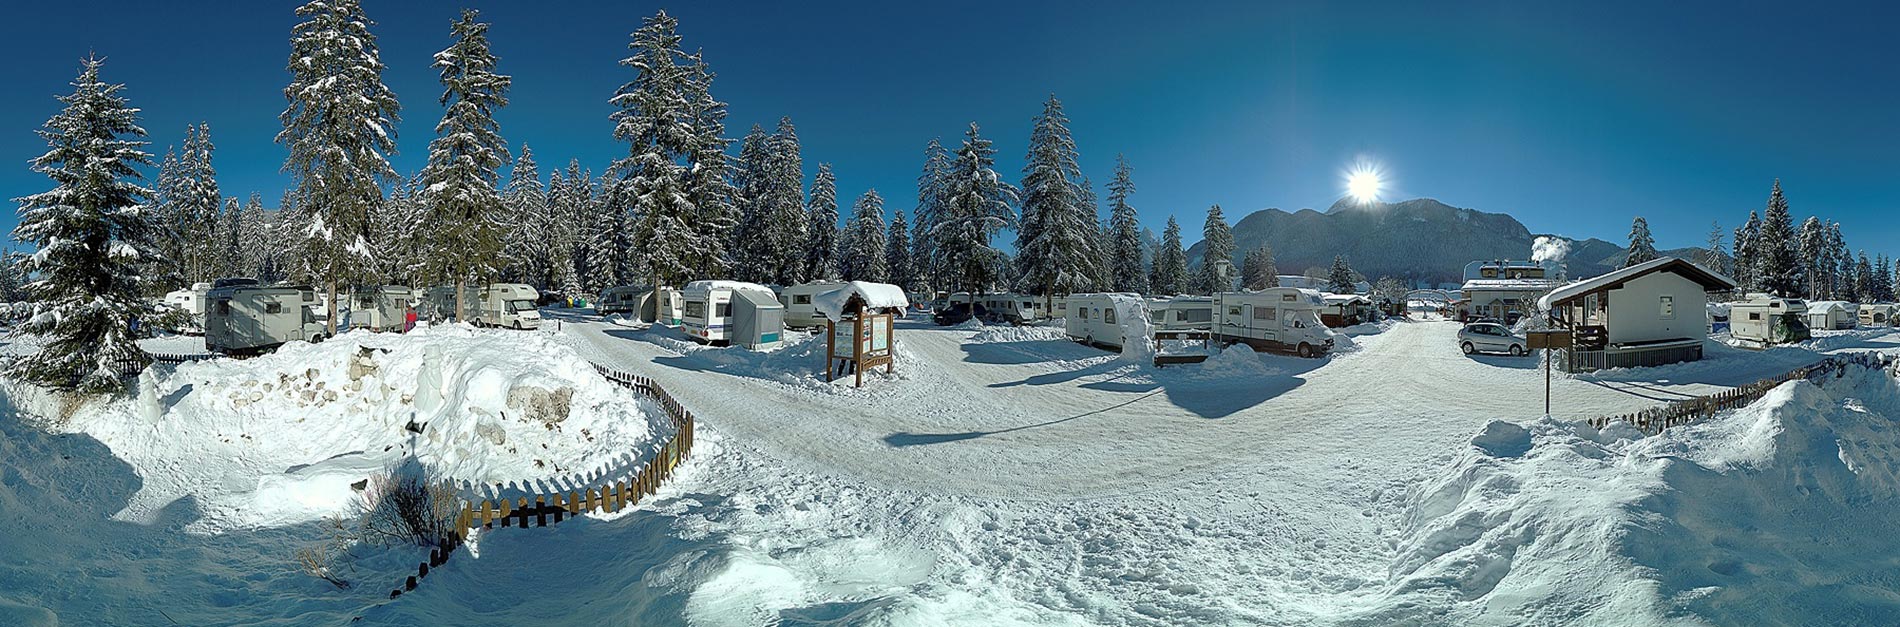 8 najlepszych zimowych kempingów we Włoszech – image 4